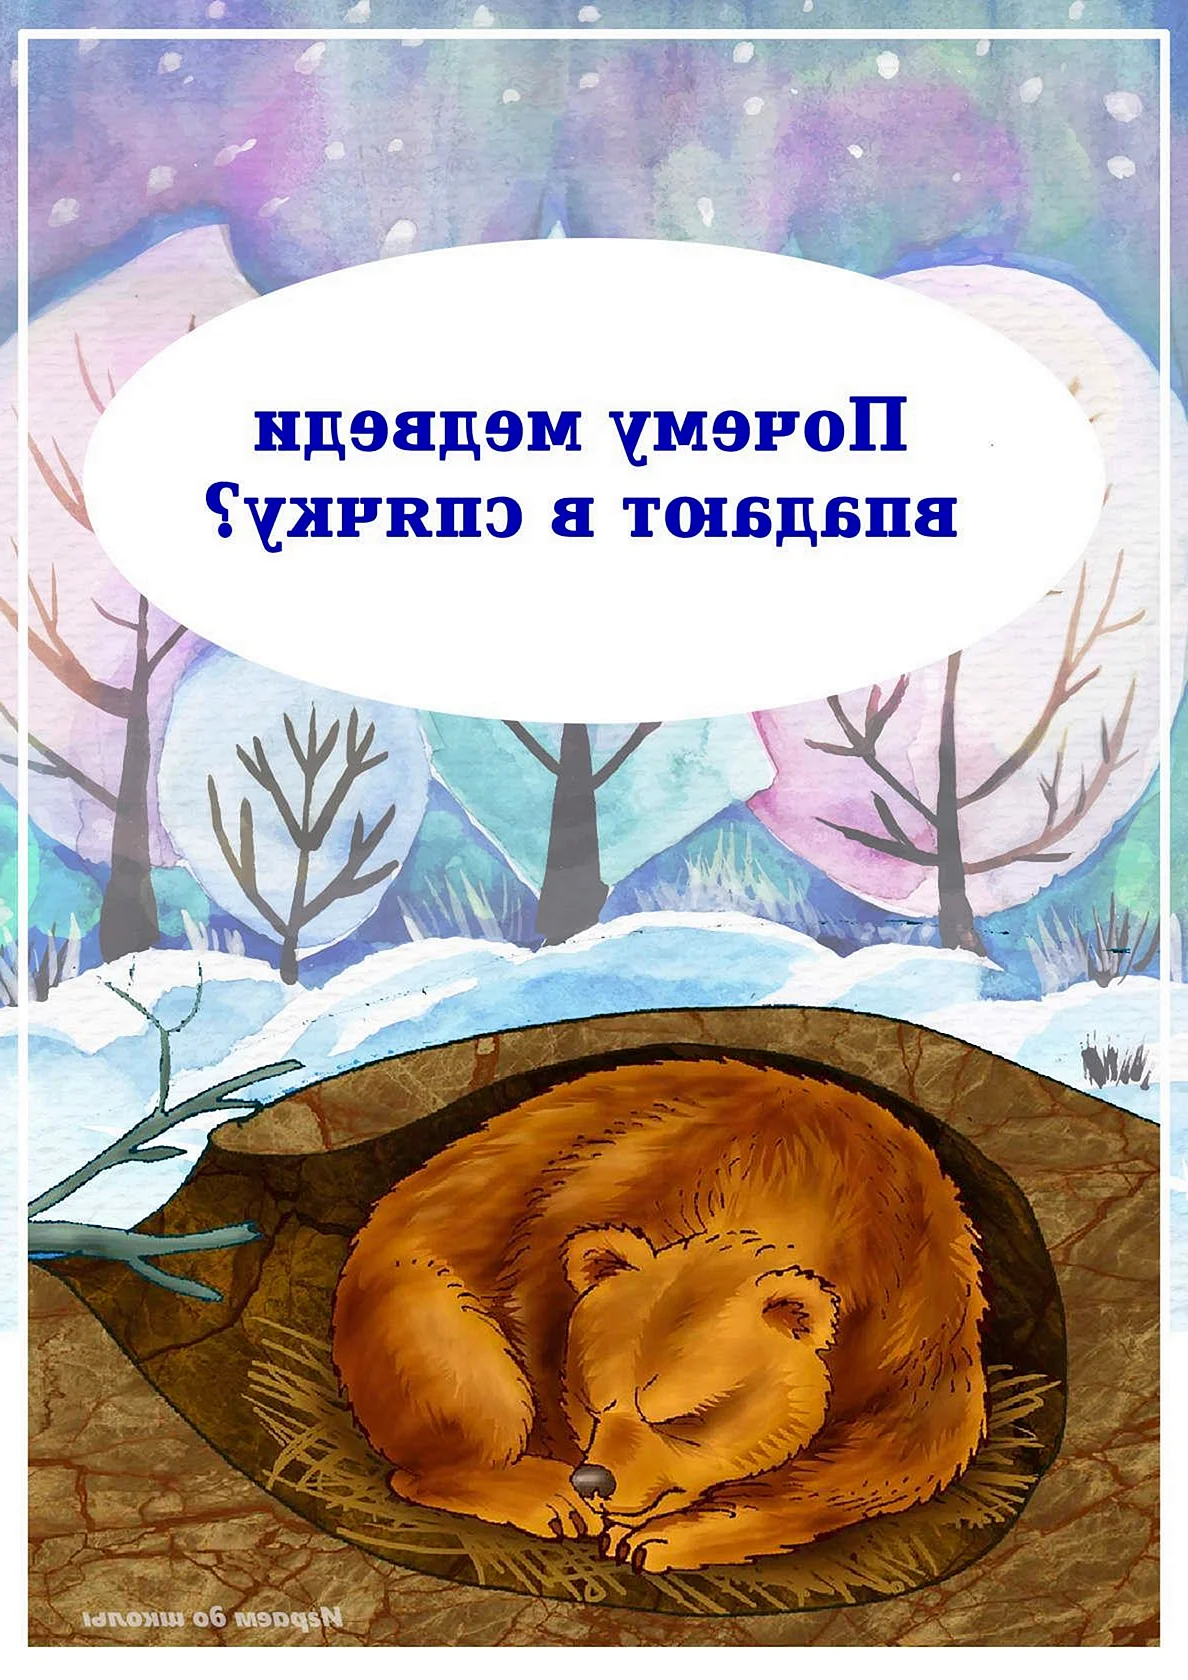 Медведь зимой впадает в спячку